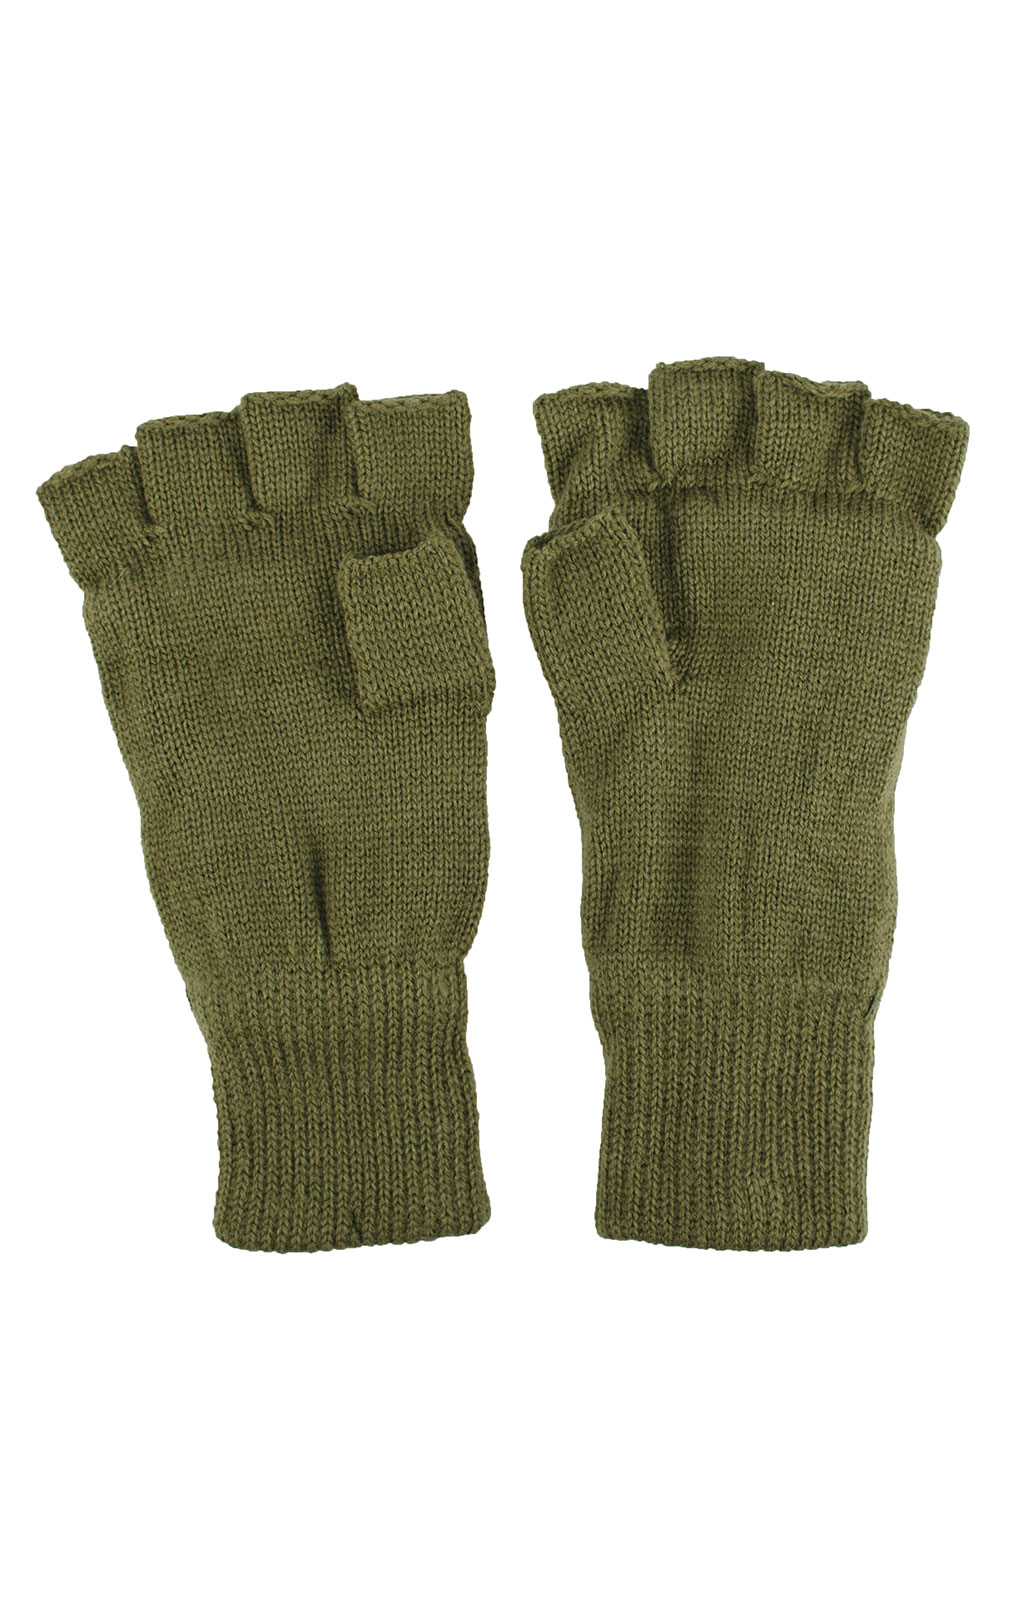 Перчатки вязаные Thinsulate без пальцев olive 